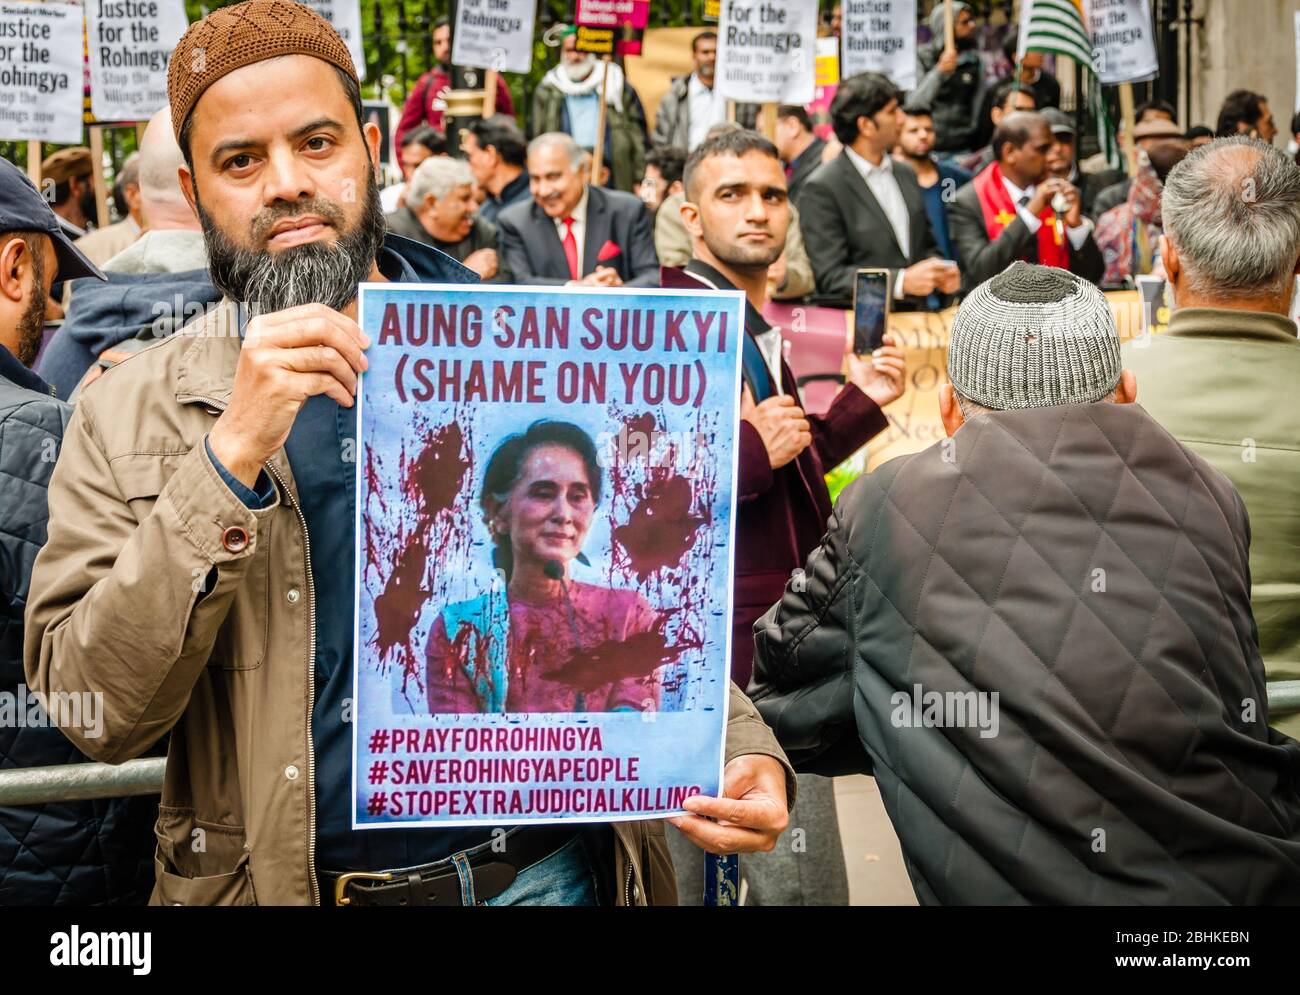 Conflitto di Rohingya, rally di fronte Downing Street intendeva esercitare pressioni sul governo britannico per intervenire per prevenire l'uccisione di Rohingya Foto Stock